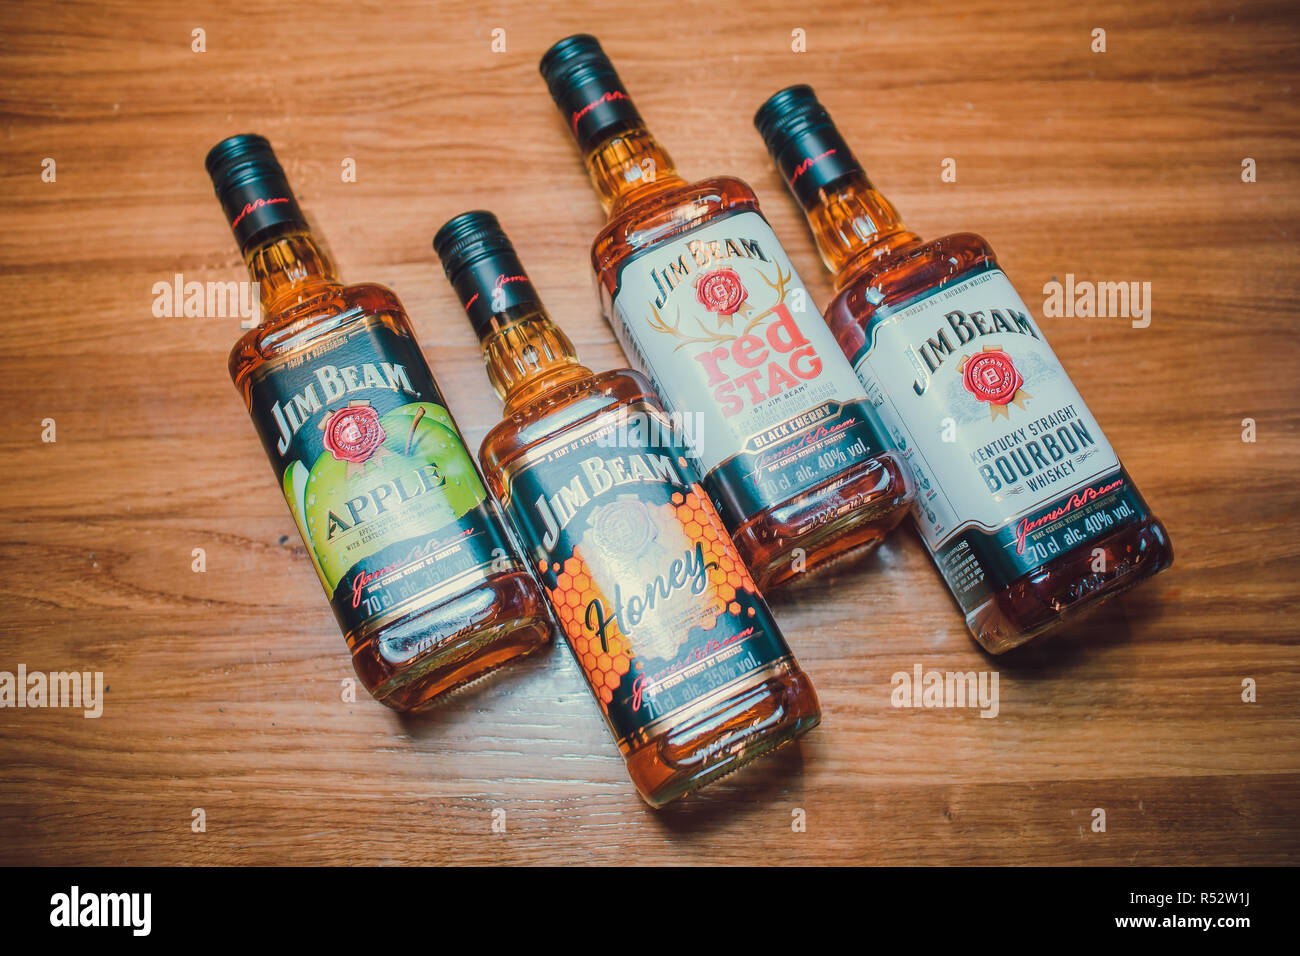 Ufa, Russia, Darling Bar, 20 Novembre, 2018: Jim Beam Kentucky Bourbon whiskey su scaffale del negozio. Jim Beam è una marca di whiskey Bourbon. Foto Stock